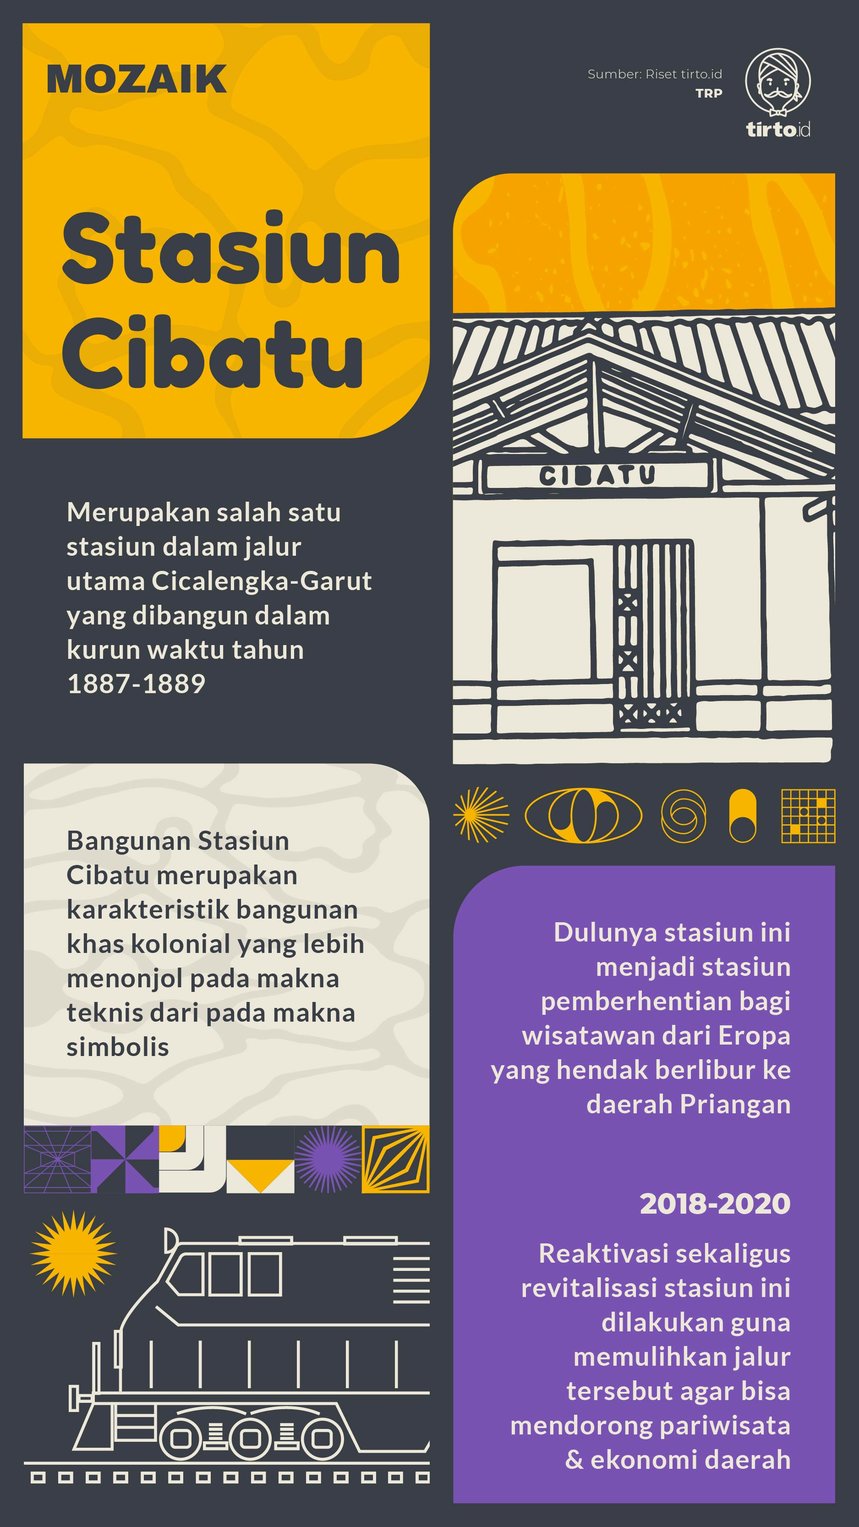 Infografik Mozaik Stasiun Cibatu